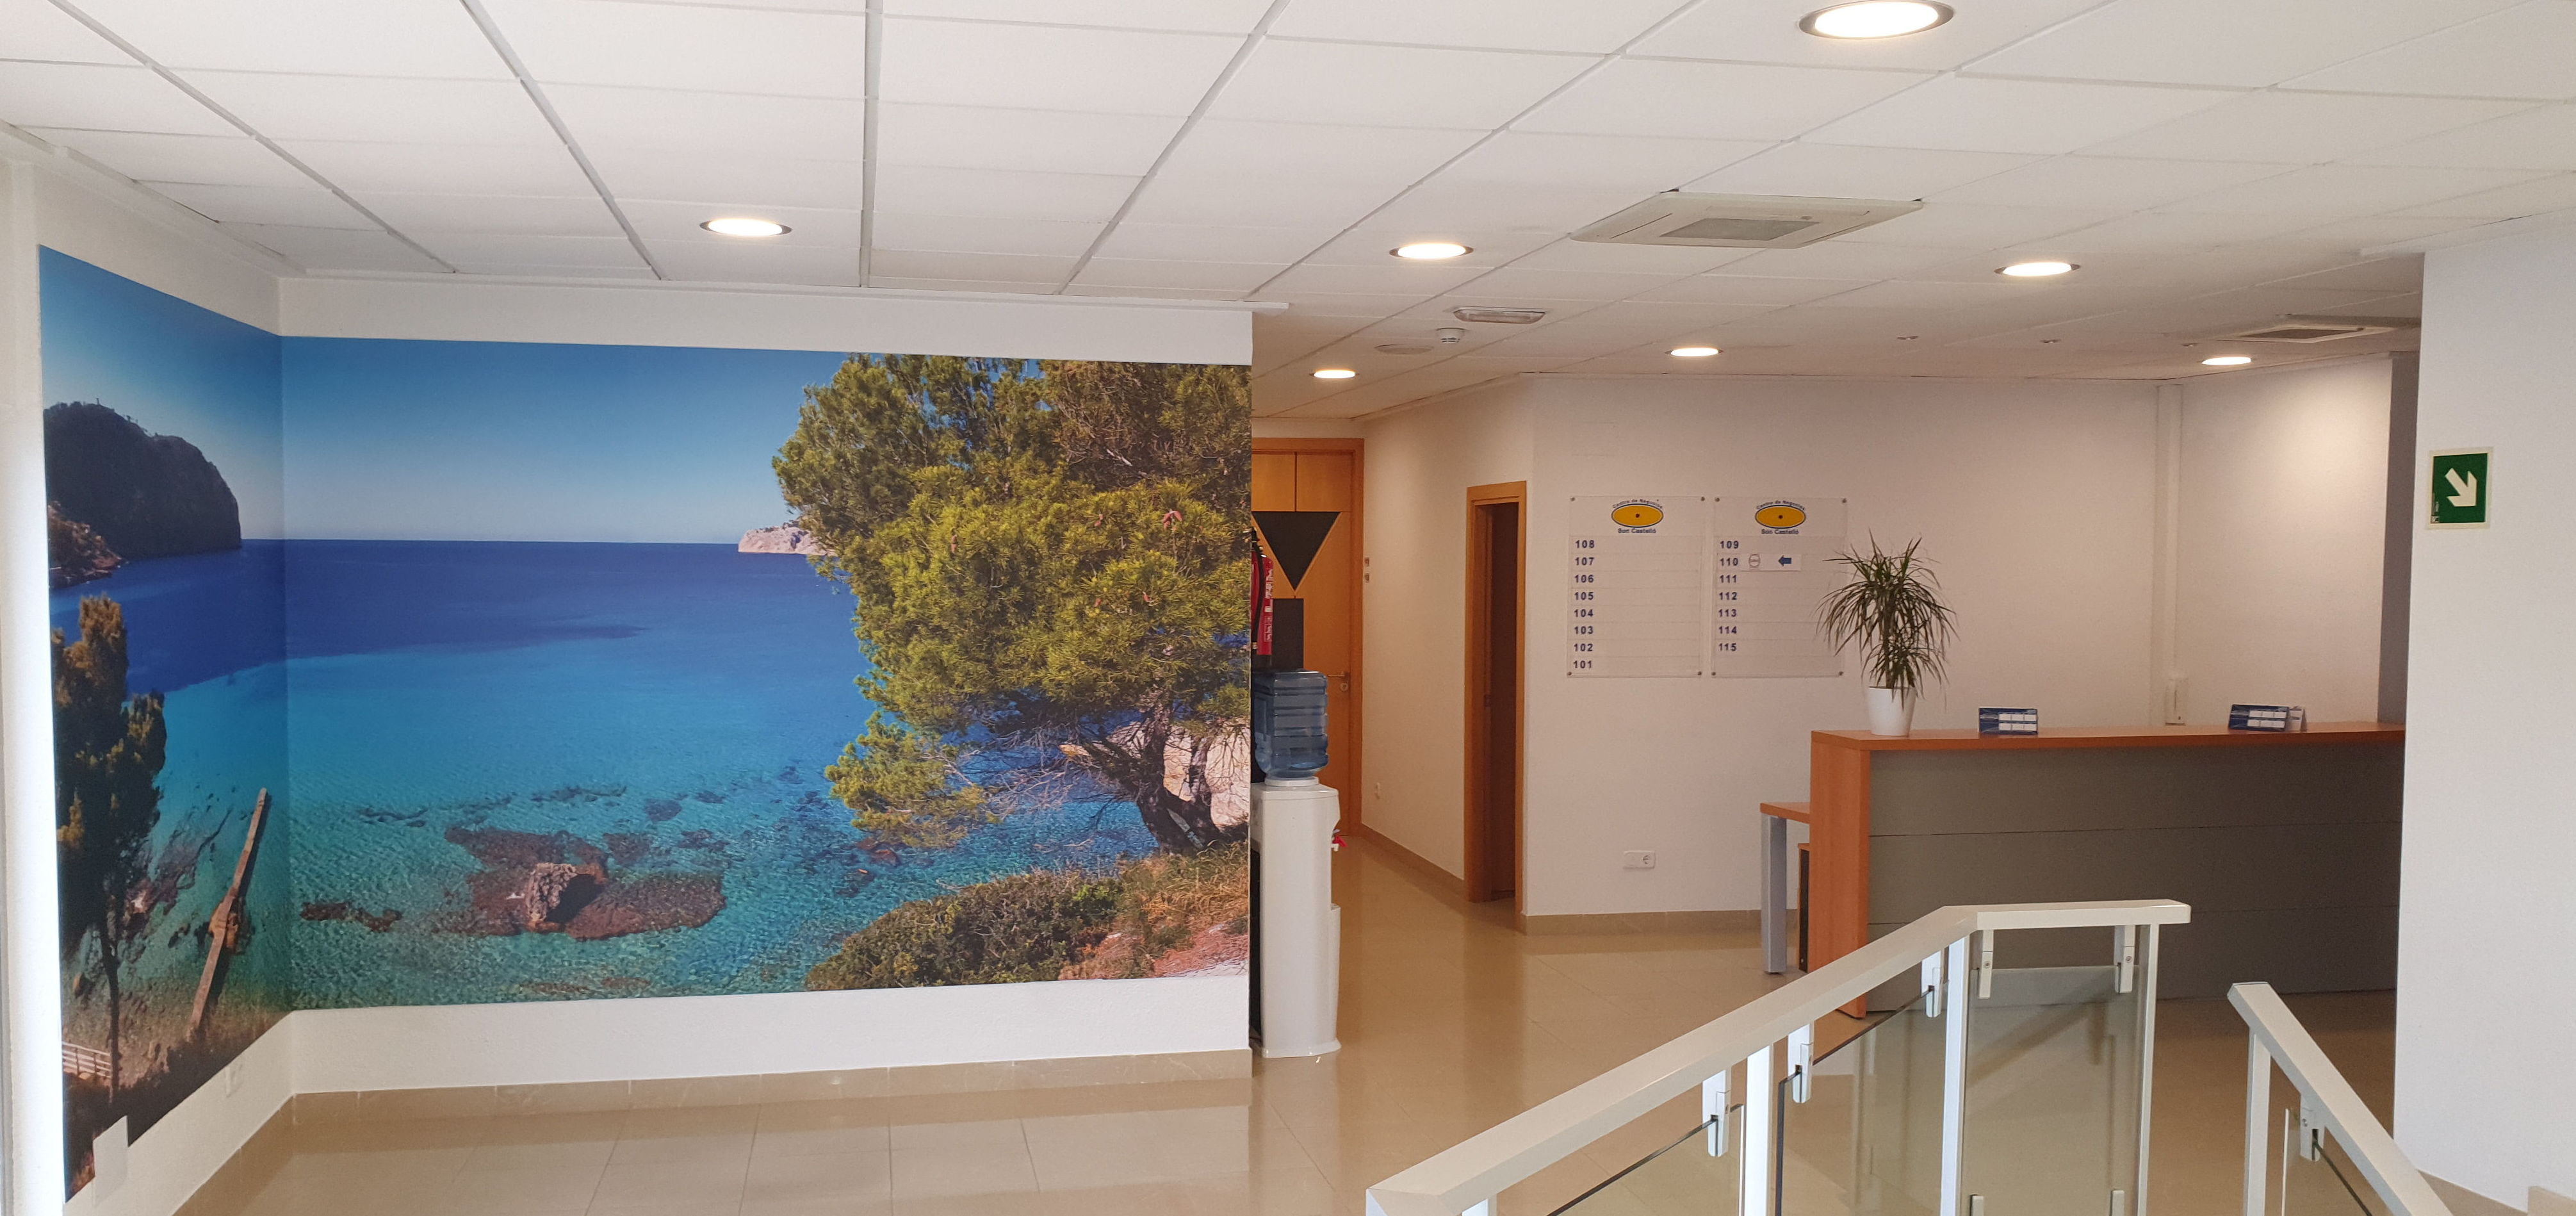 Foto 2 de Alquiler salas totalmente equipadas en Palma de Mallorca | Centro de negocios Son Castelló